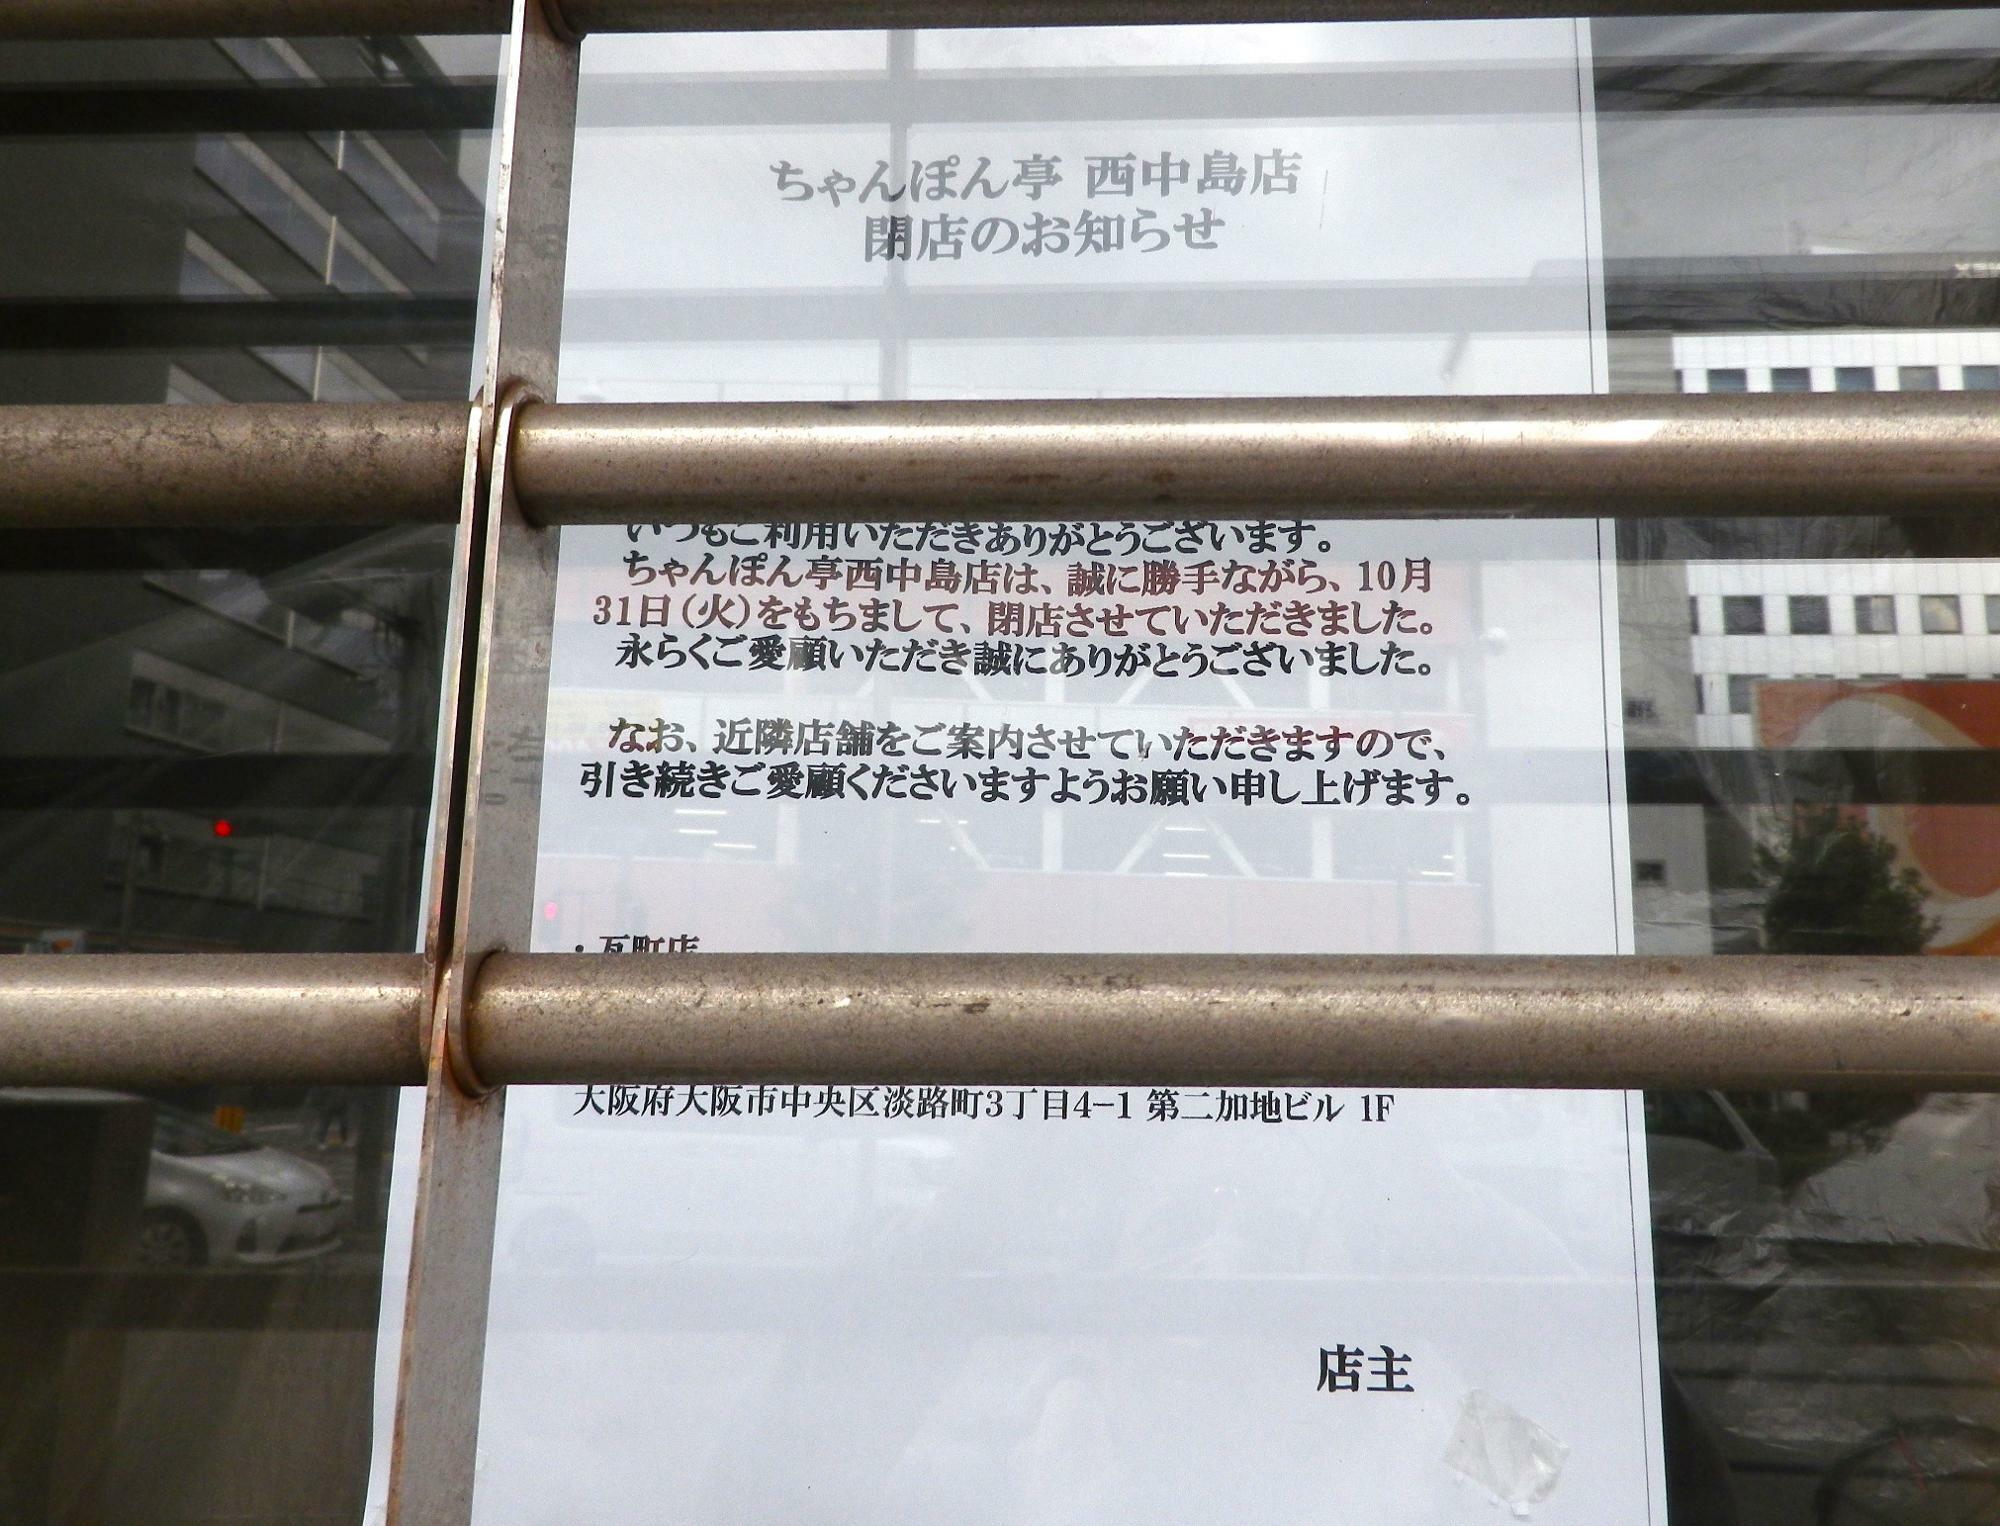 10月31日(火)に完全閉店した「ちゃんぽん亭総本家　西中島店」の「閉店のお知らせ」。